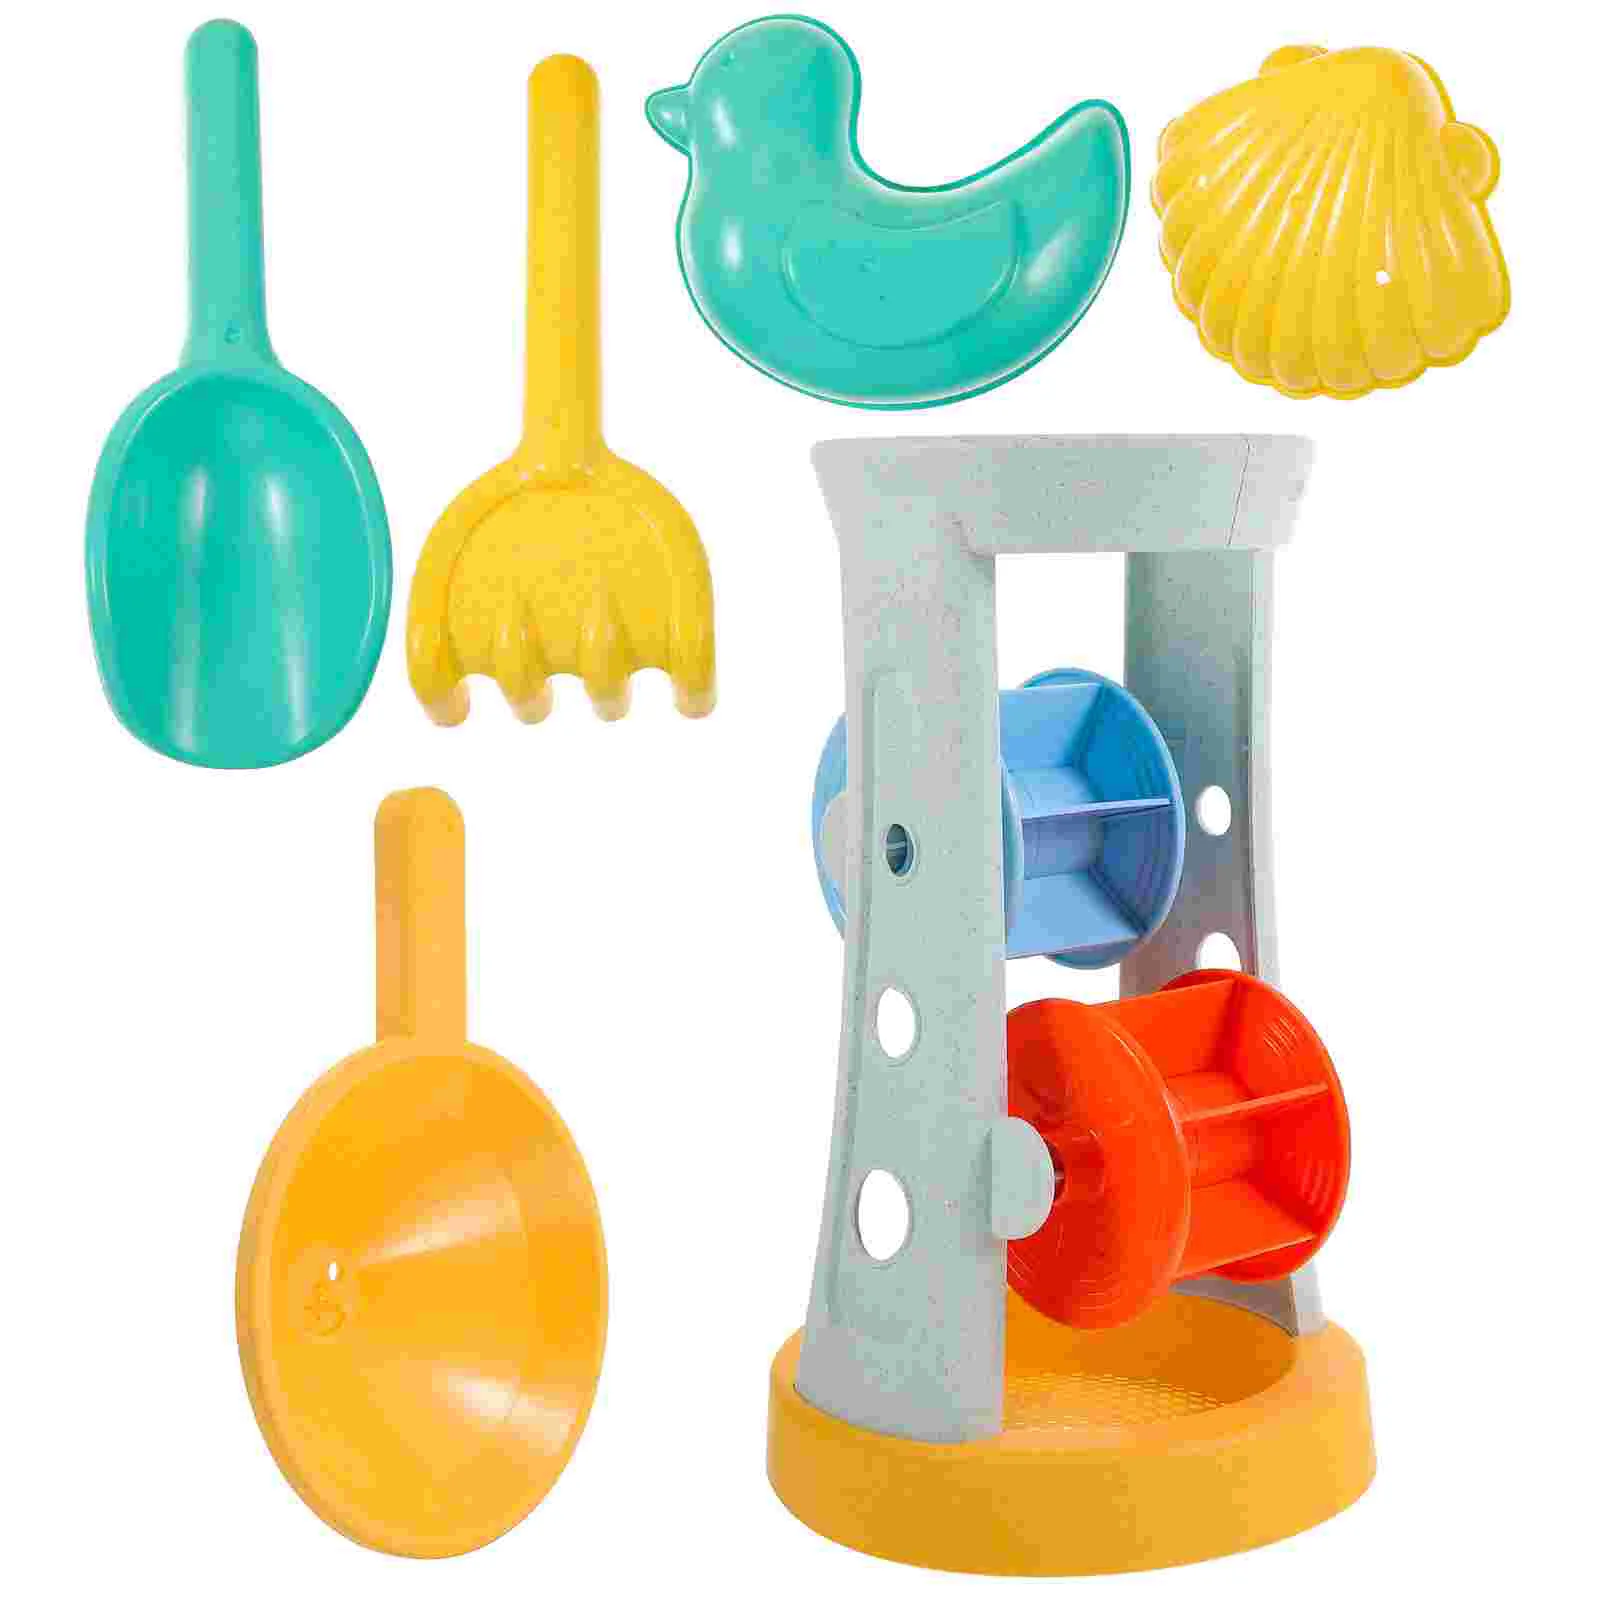 

Игрушки для мороженого, детский уличный пляжный песок, стебель пшеницы, игровая игрушка, Детская Интерактивная пластиковая морская тематика